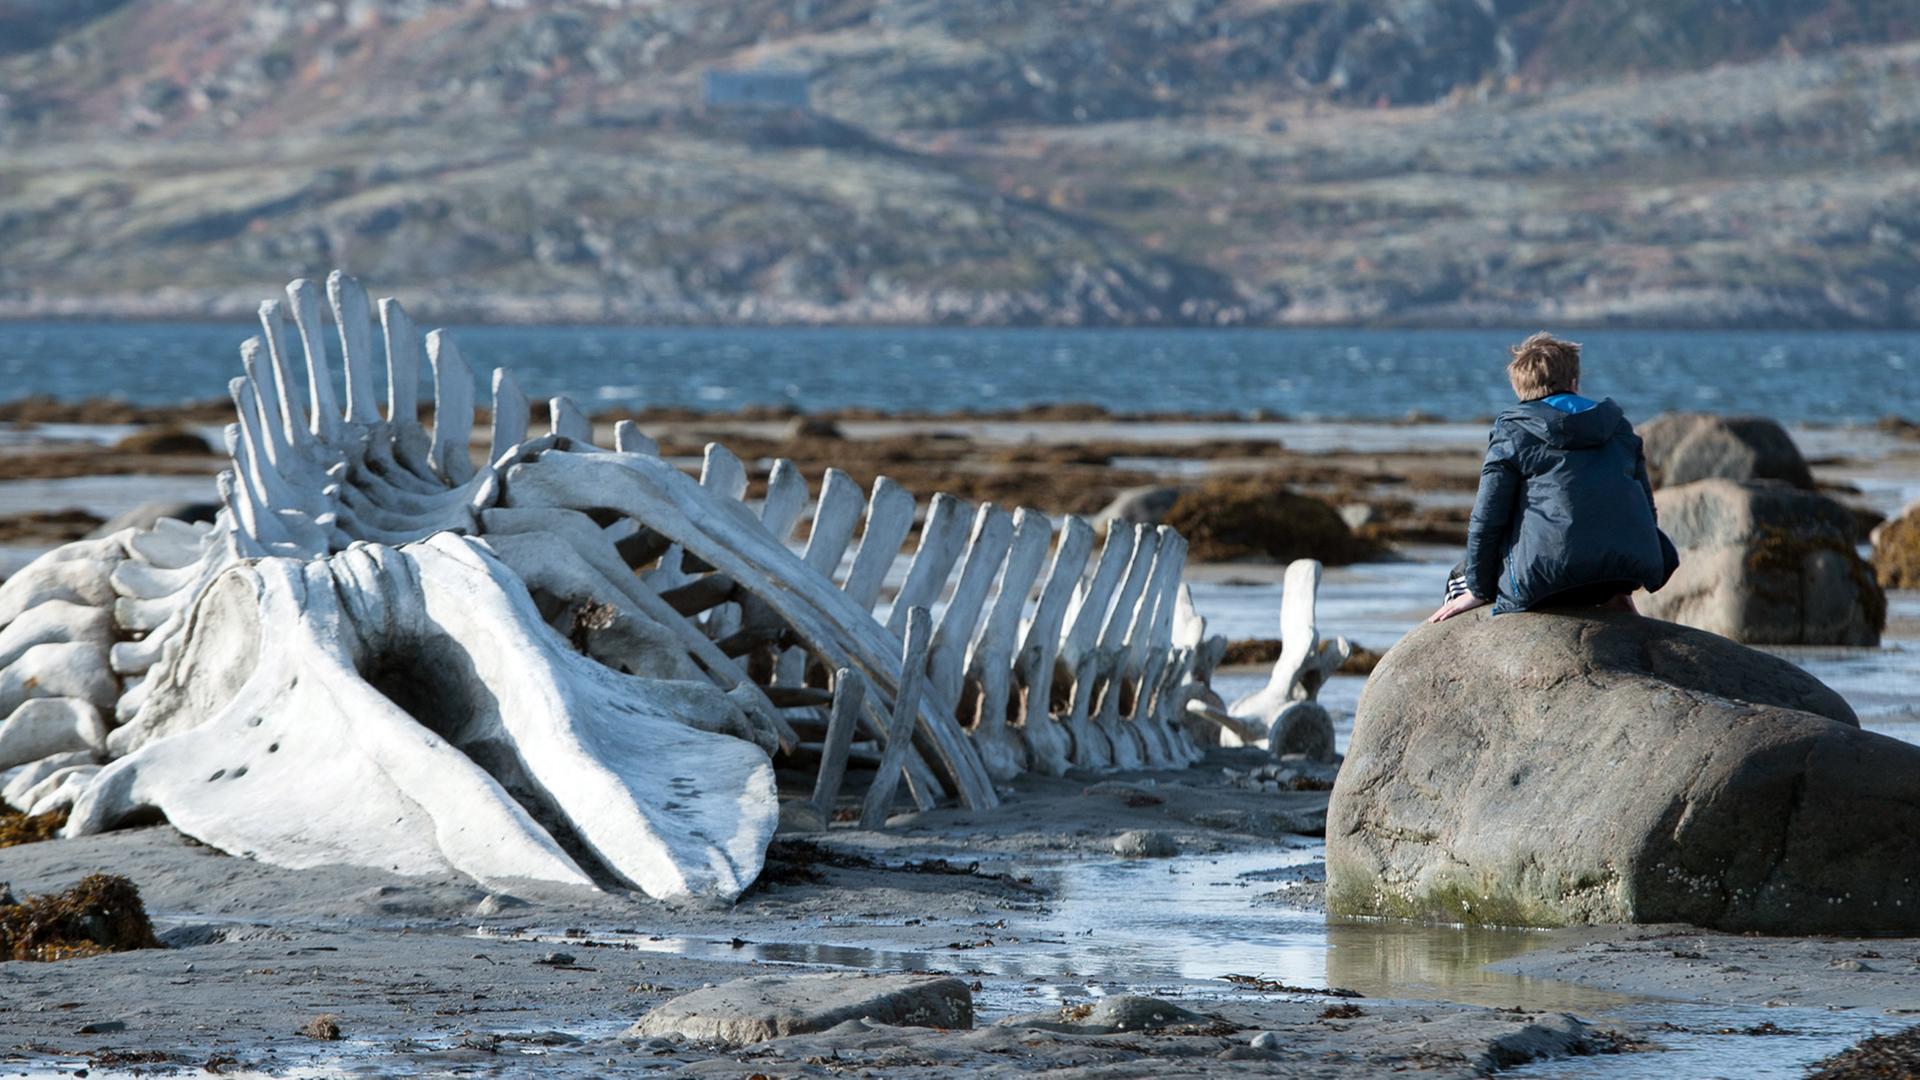 Der Junge Roma, gespielt von Sergej Pochodajew, sitzt neben einem Walgerippe am Meer der russischen Halbinsel Kola - eine Szene des Films "Leviathan" von Andrej Swajginzew aus dem Jahr 2014.